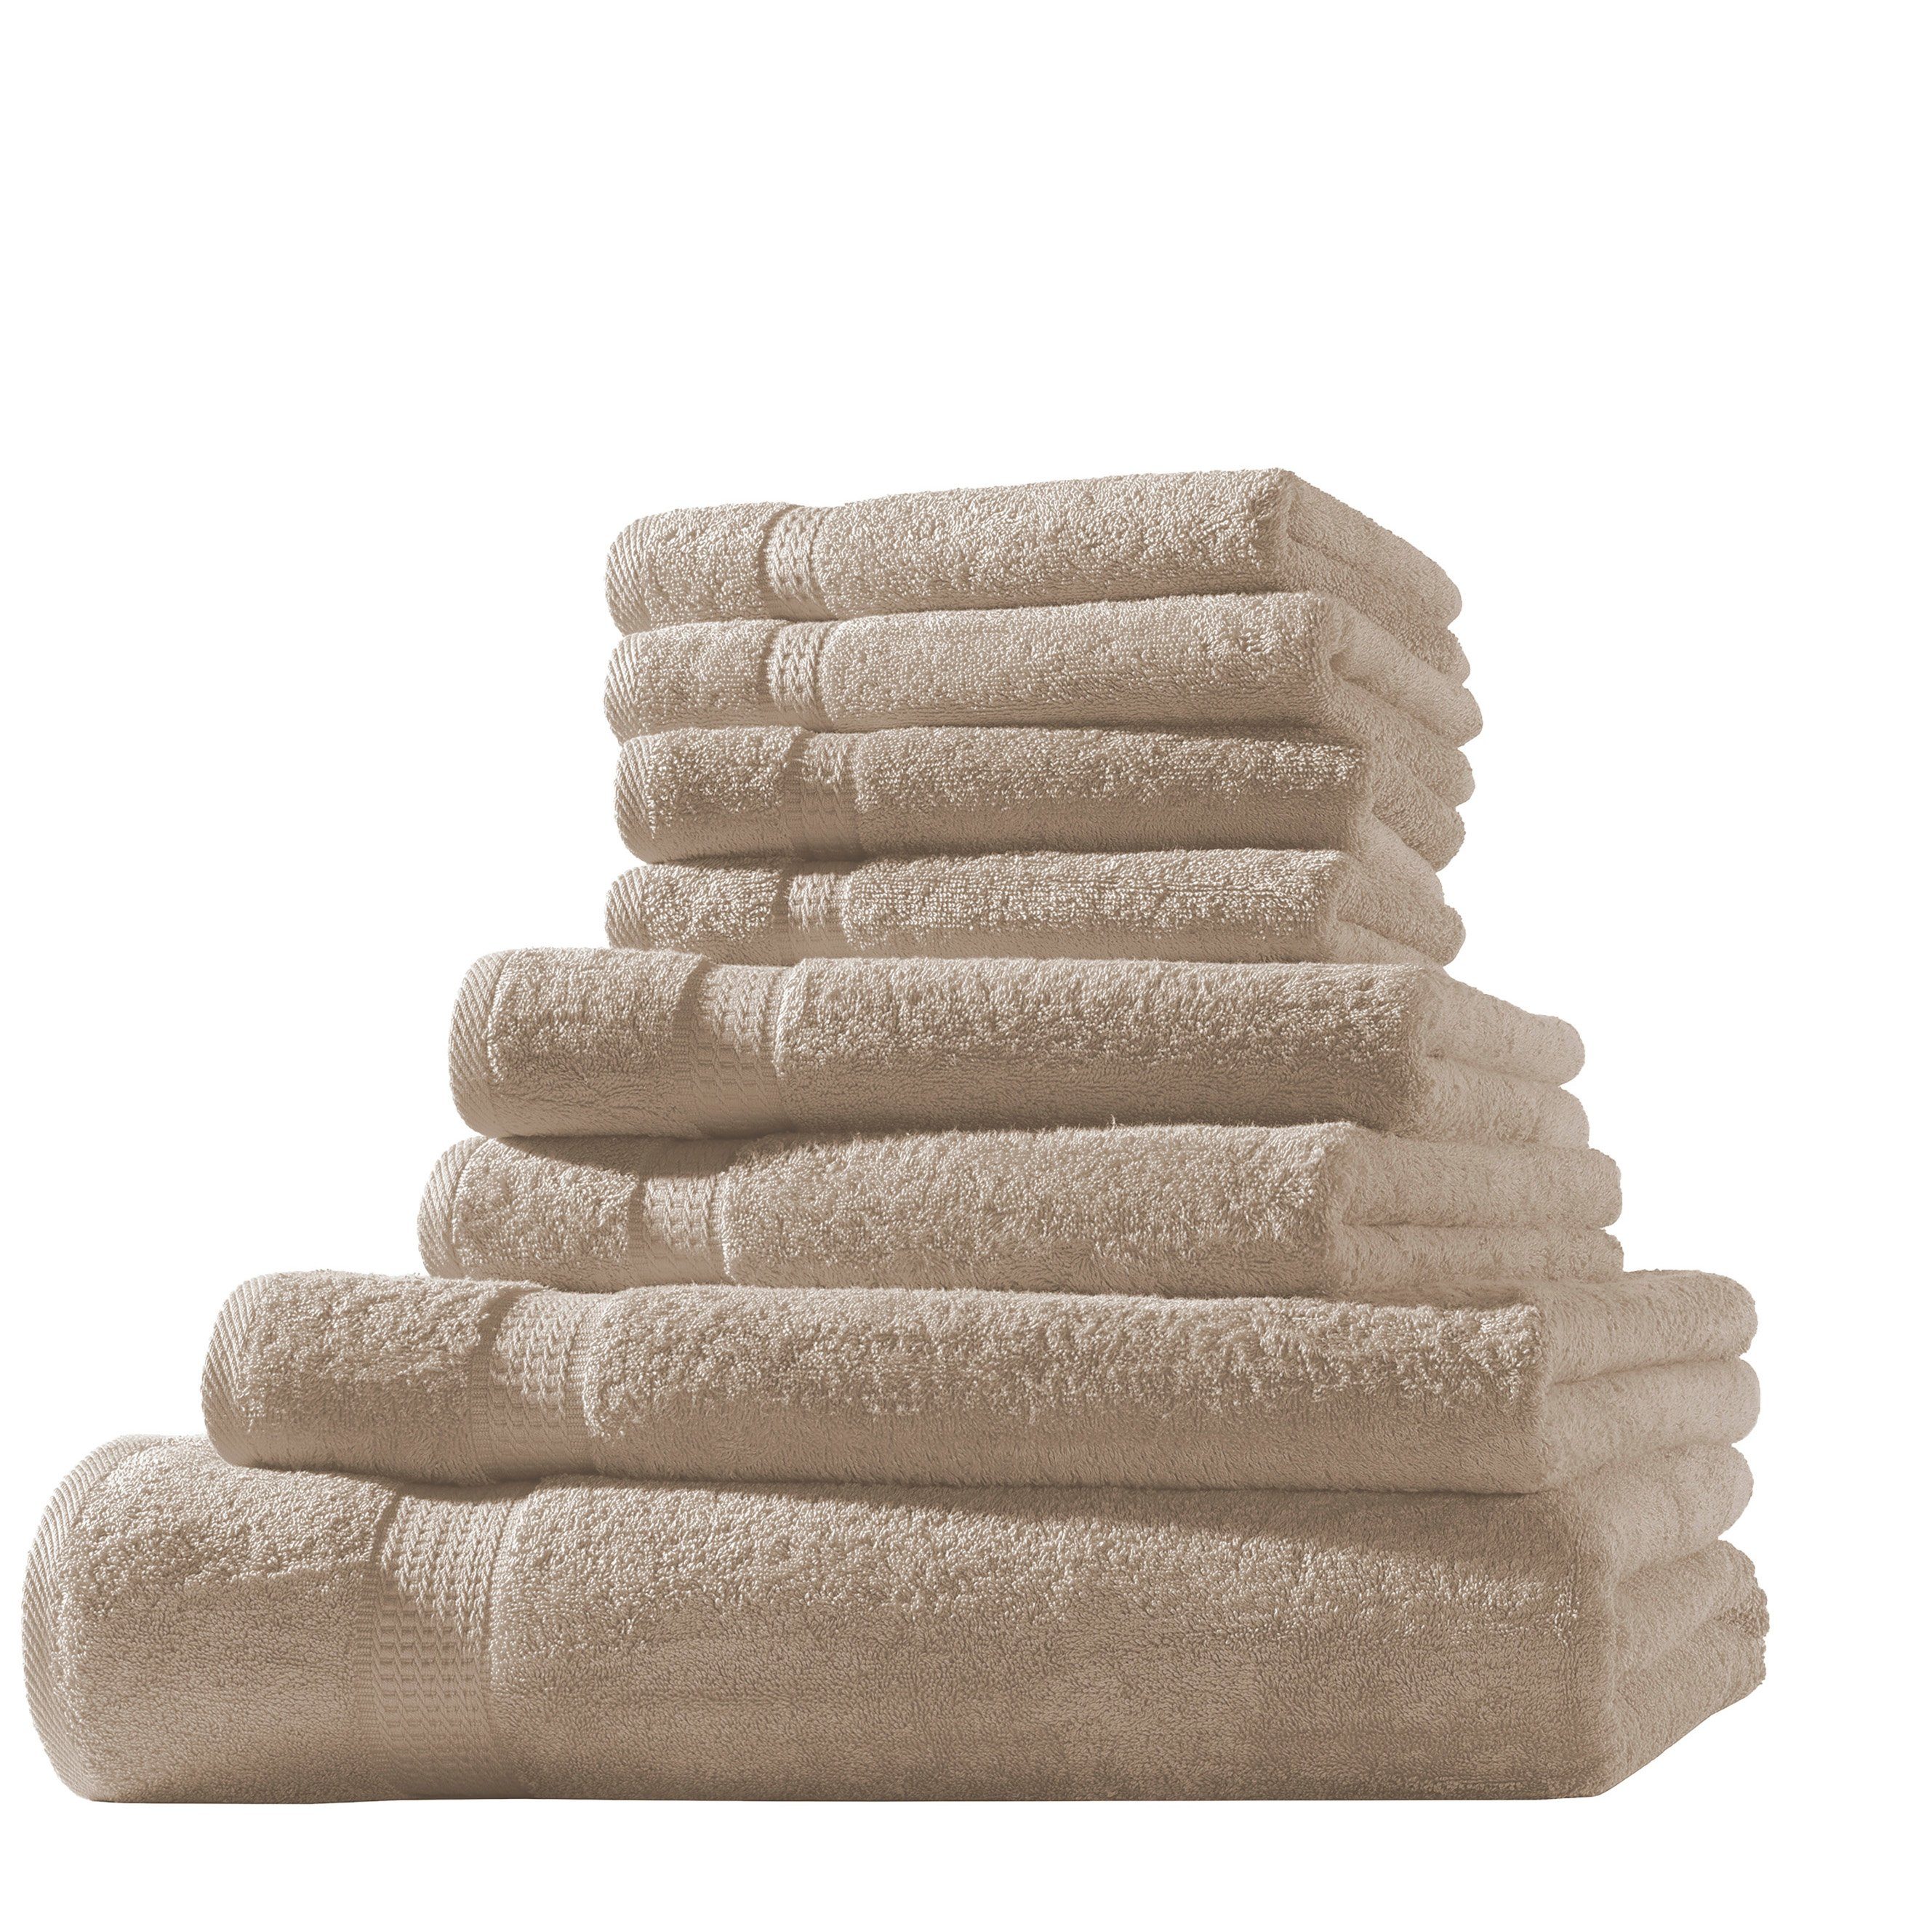 Hometex Premium Textiles Handtuch in Premium Qualität 500 g/m², Feinster Frottier-Stoff 100% Baumwolle, 1x Badetuch + 1 Duschtuch + 2 Handtuch + 4 Gästetuch, Kuschelig weich, saugfähig, Extra schwere, flauschige Hotel-Qualität